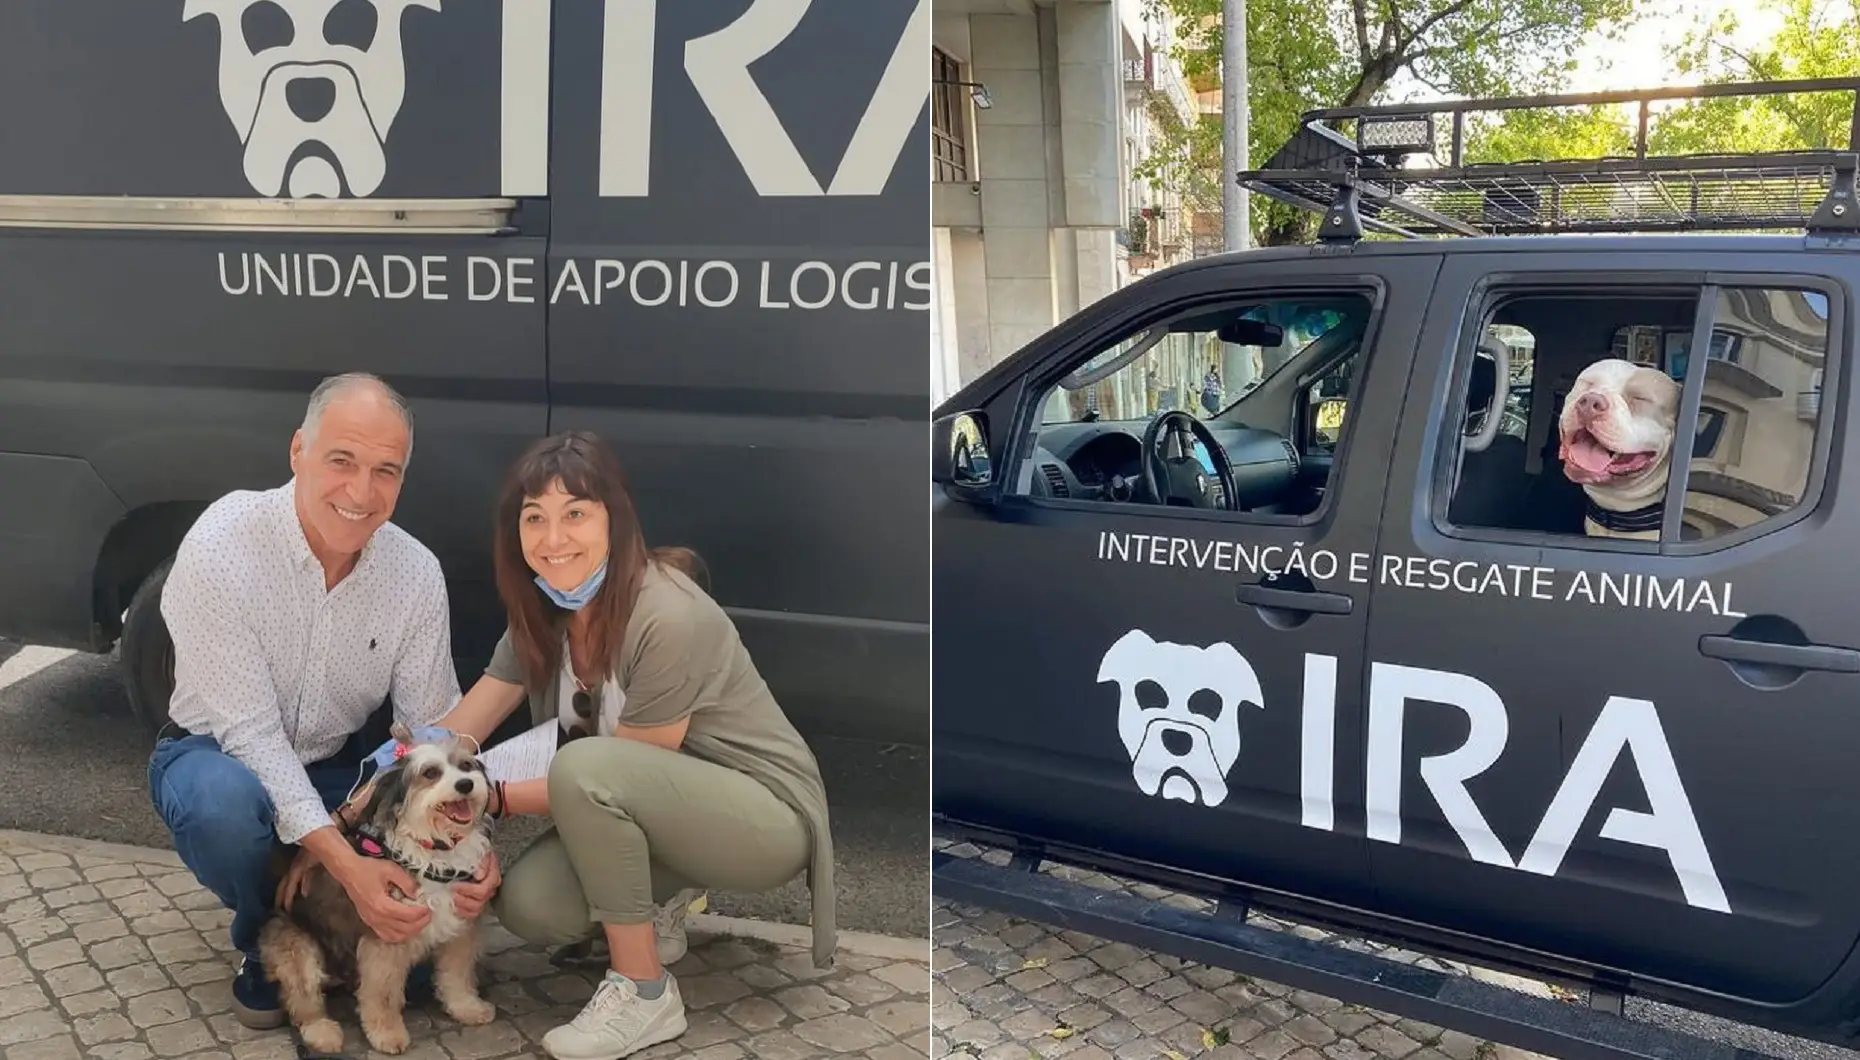 Intervenção E Resgate Animal, Ira, Rodrigo Guedes De Carvalho